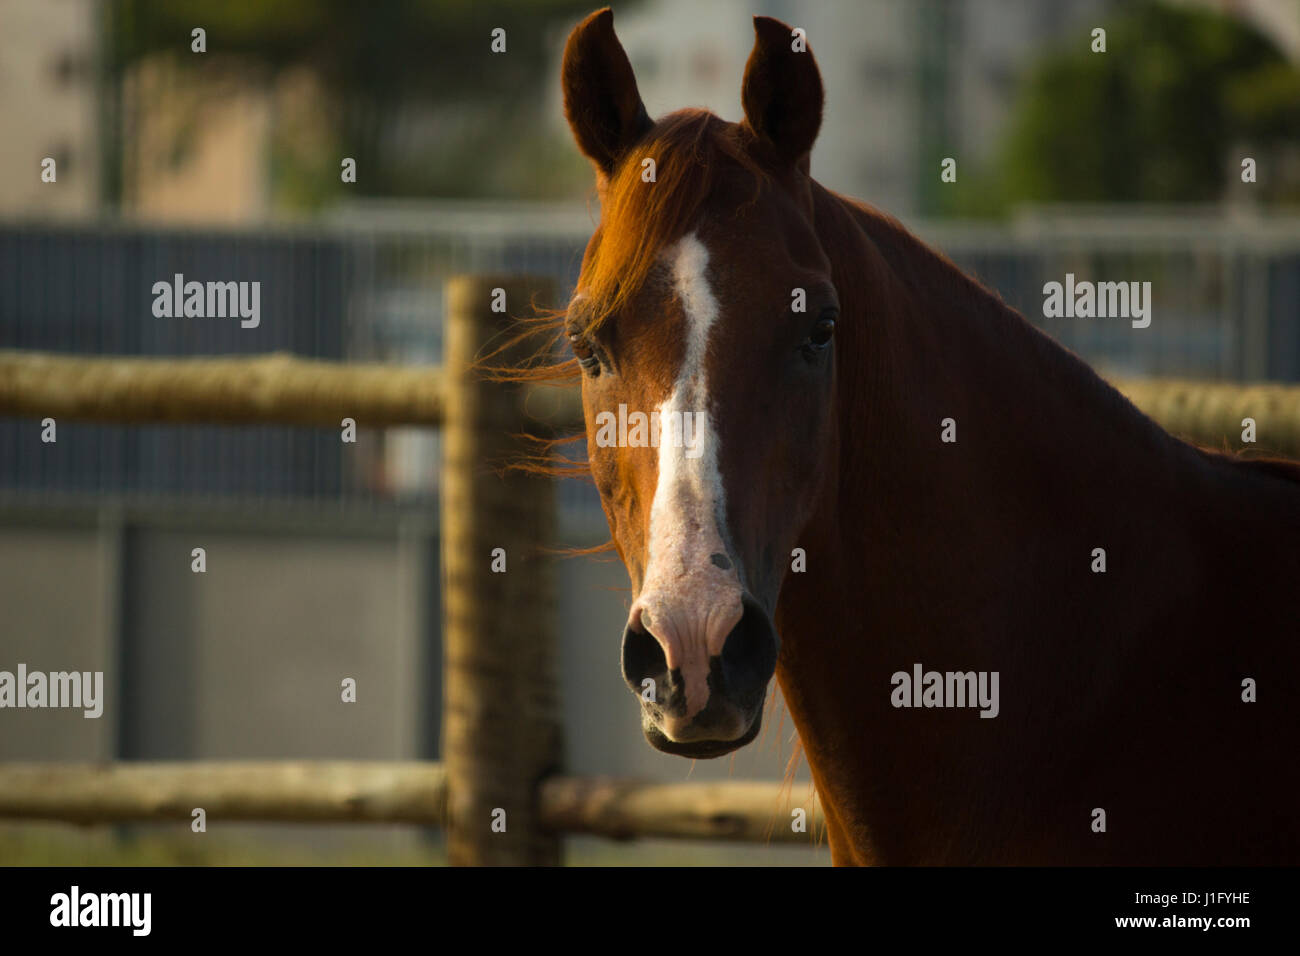 Bay arabian horse close-up Stock Photo